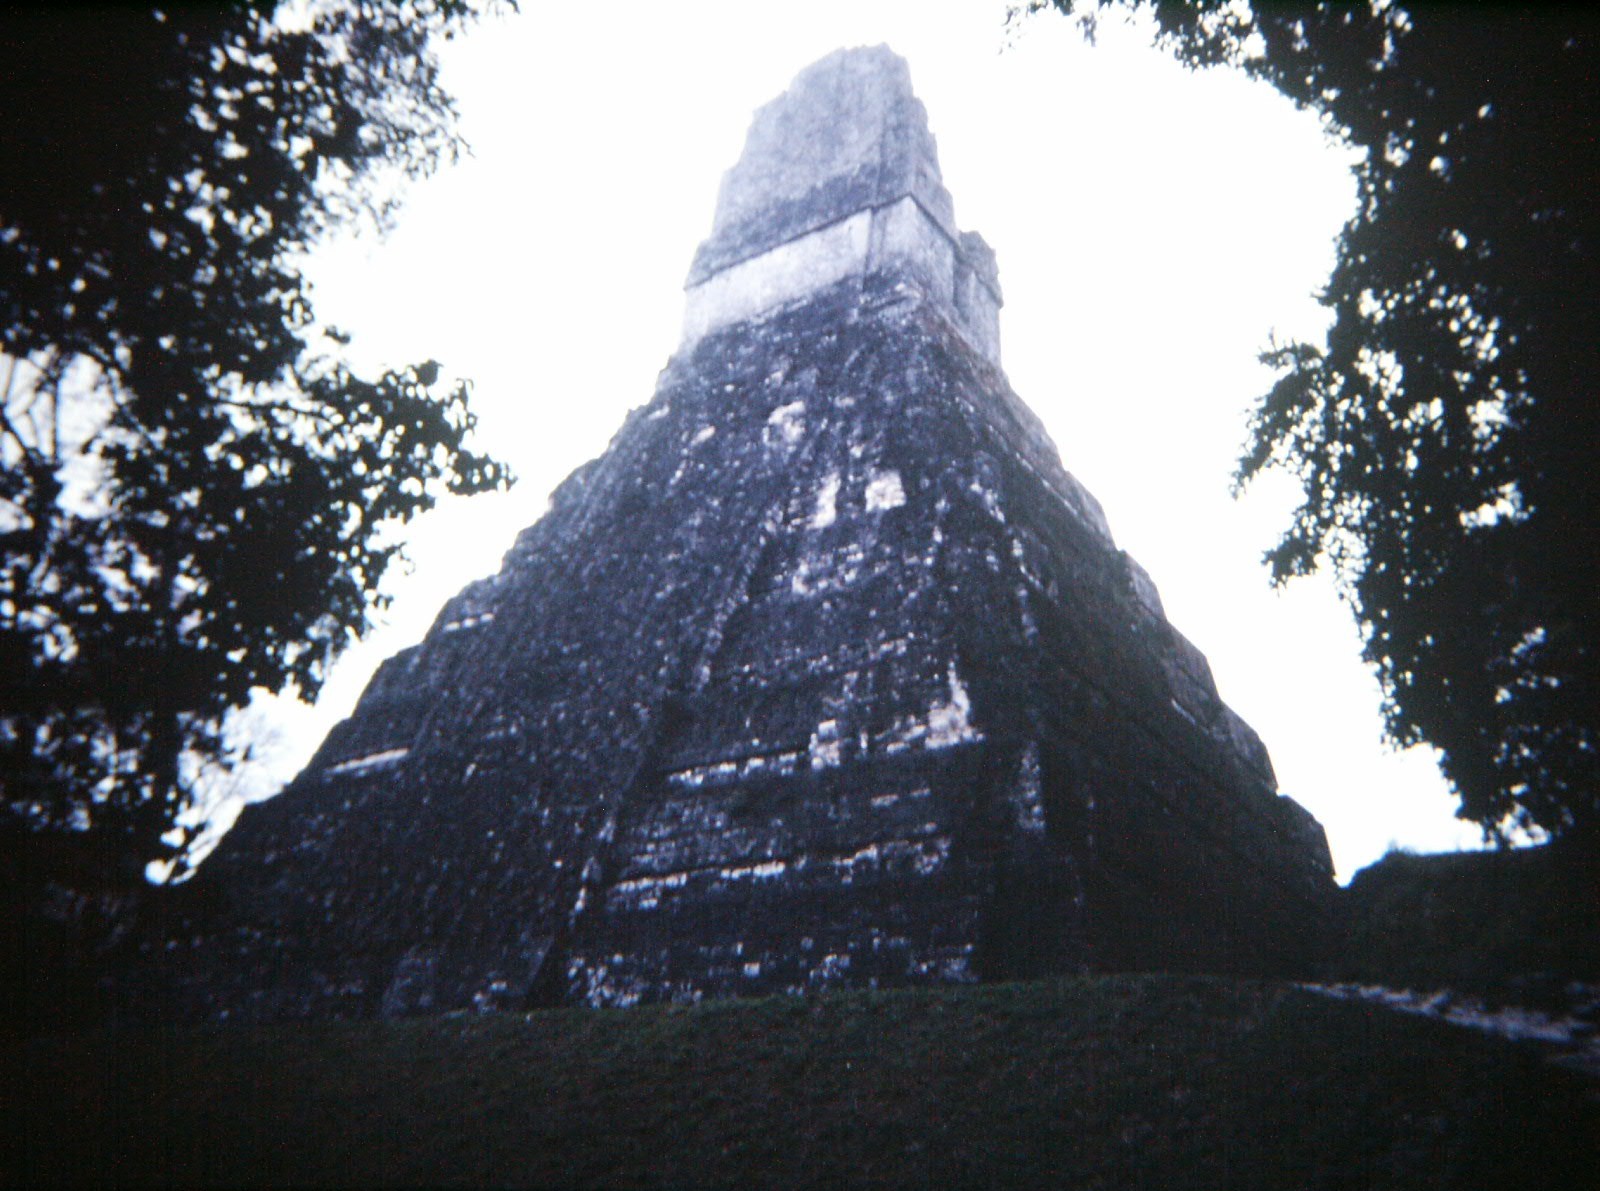 Пирамида 1 16. Пирамида 1 11 121. Пирамида 1 11 121 1331 14641. Дисней башня пирамиды в одной фото. Пирамида Тикаля вид с вершины фото.